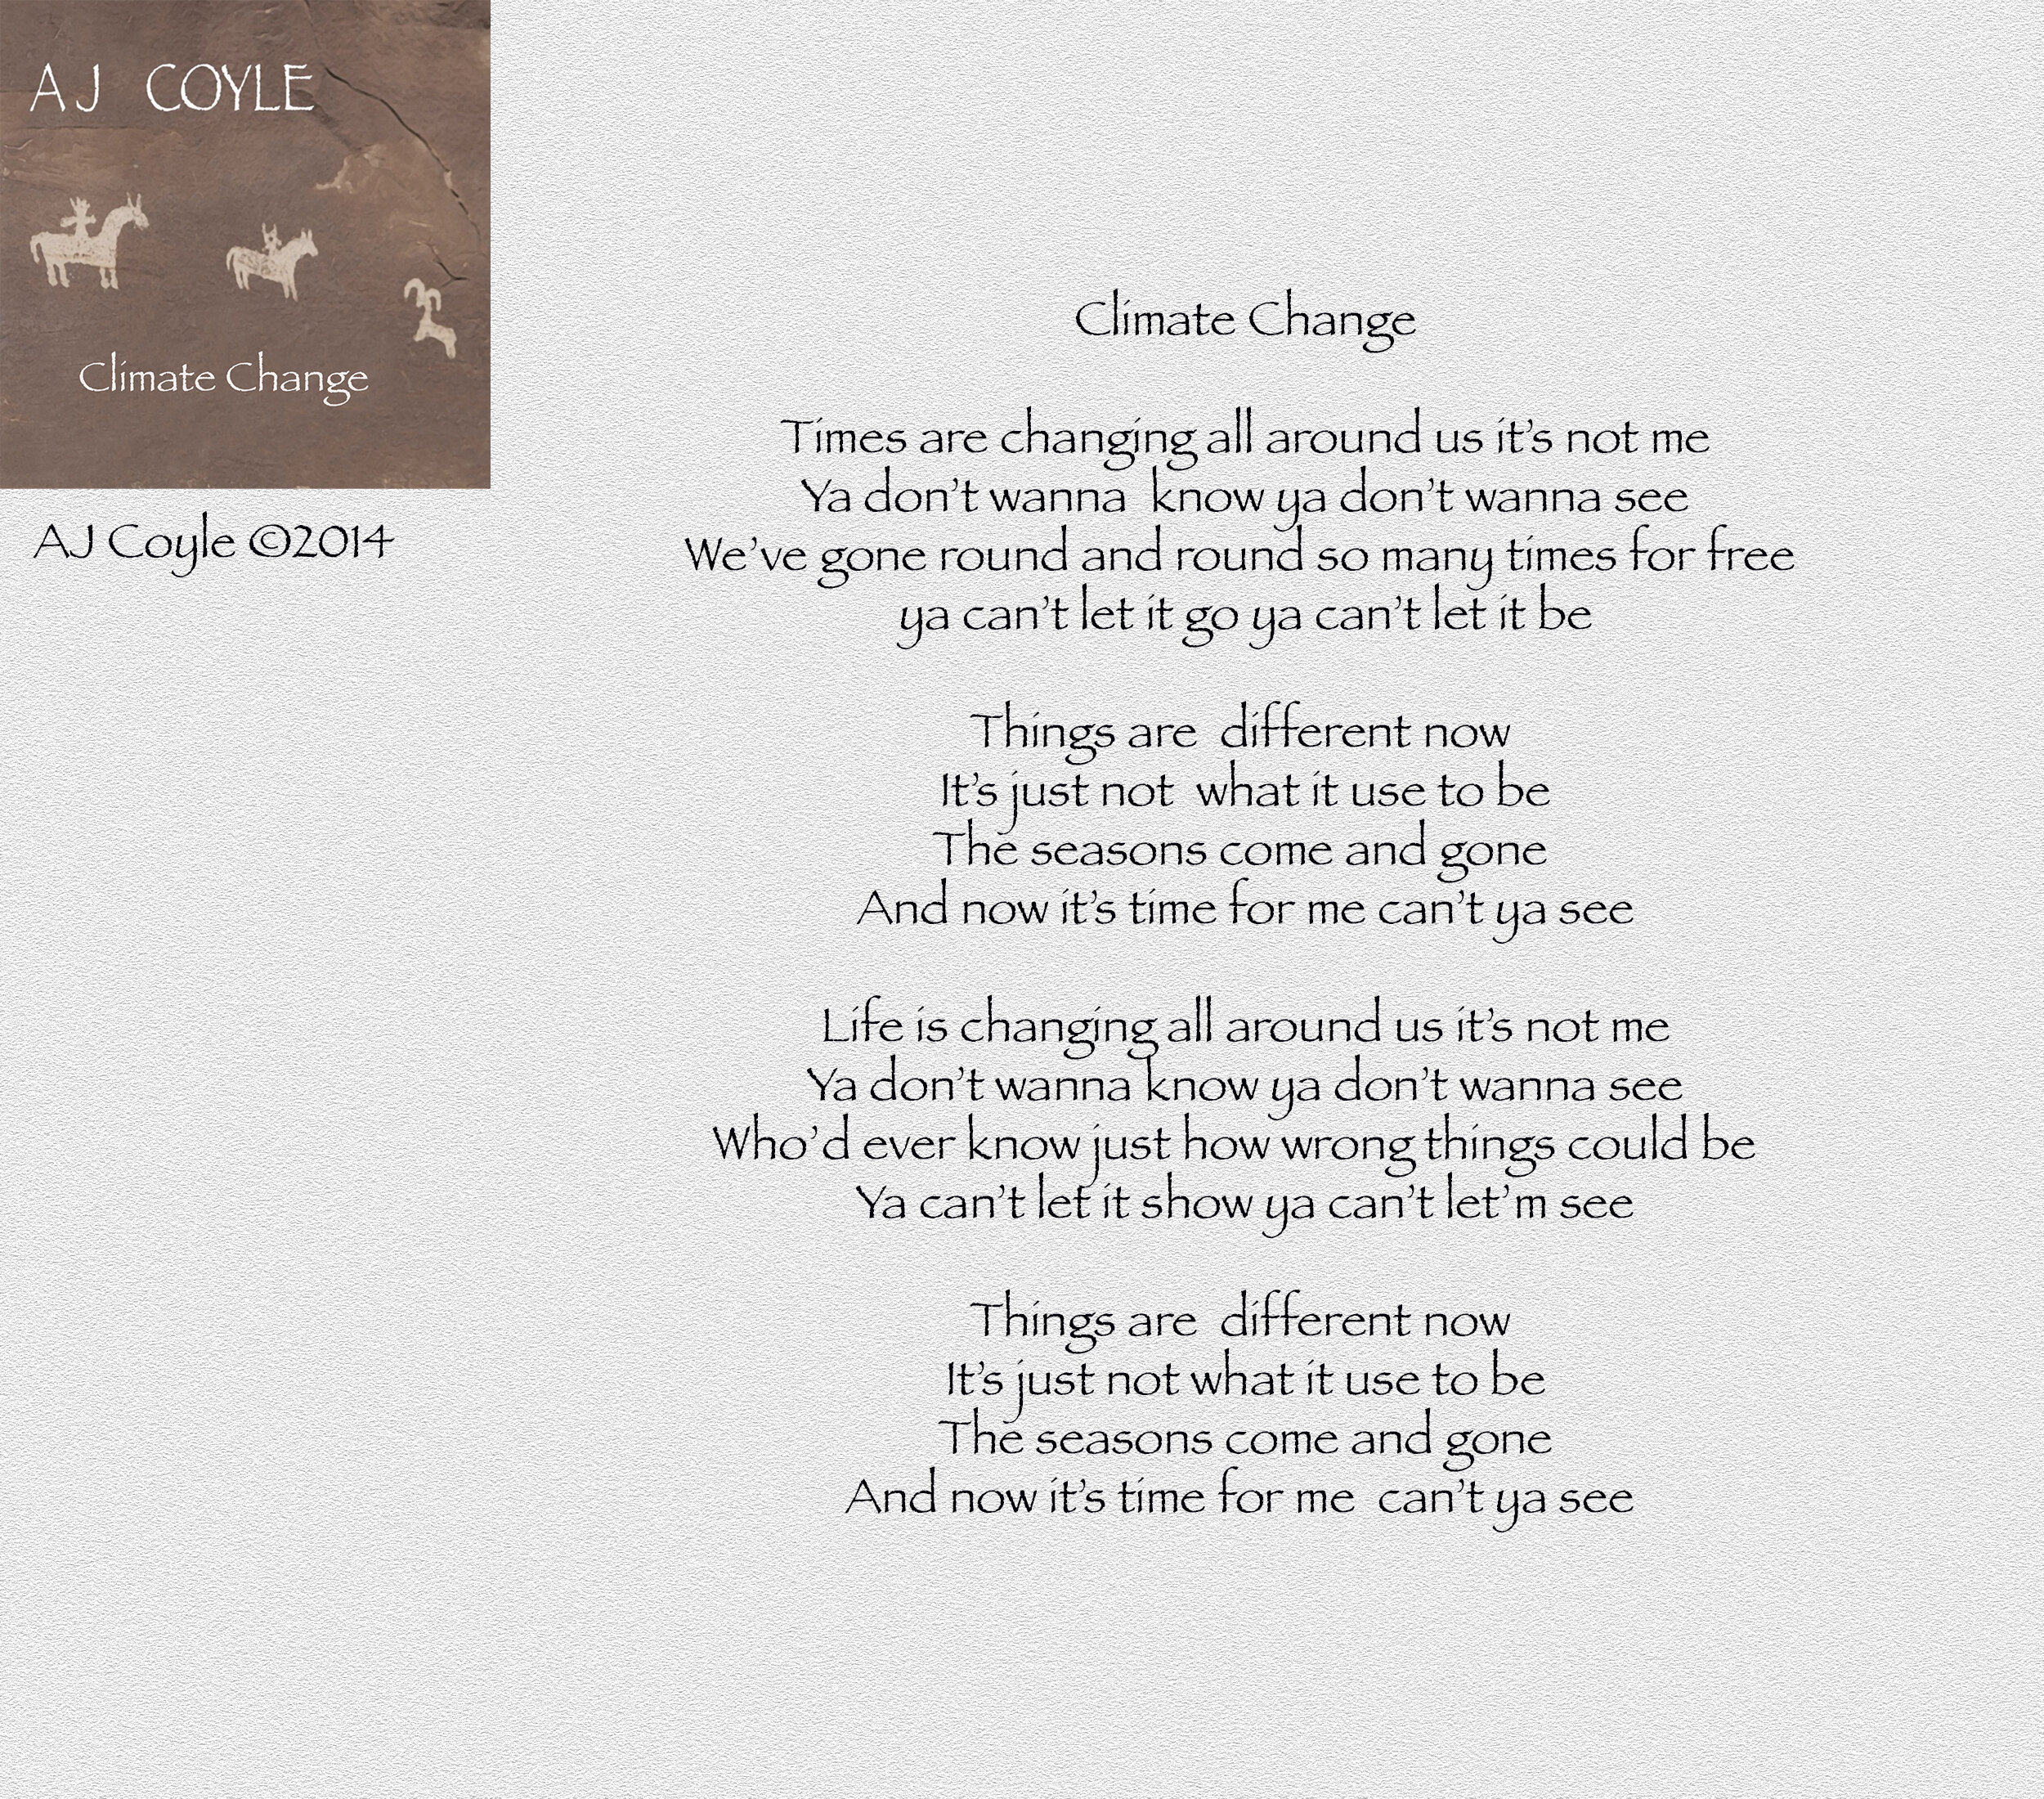 Climate Change - AJ Coyle